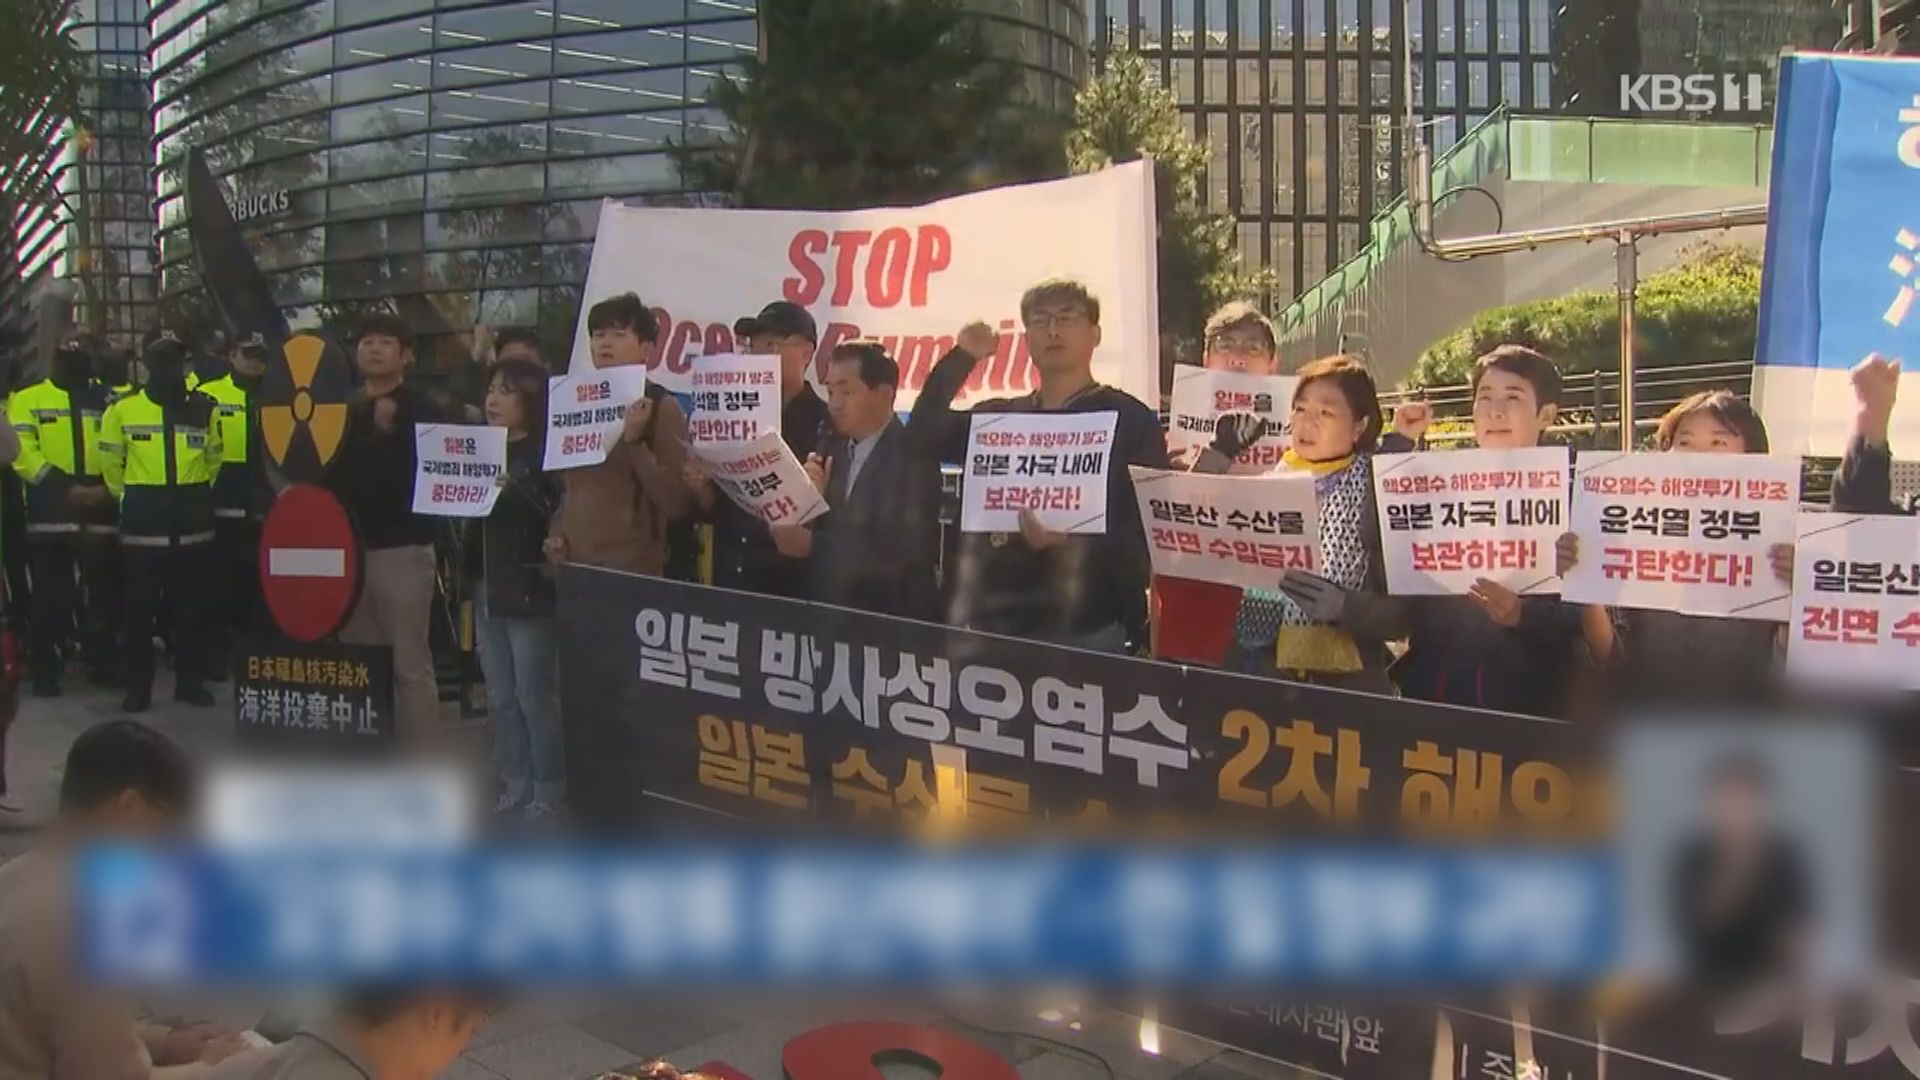 日本排放第二輪福島核污水 南韓有示威抗議